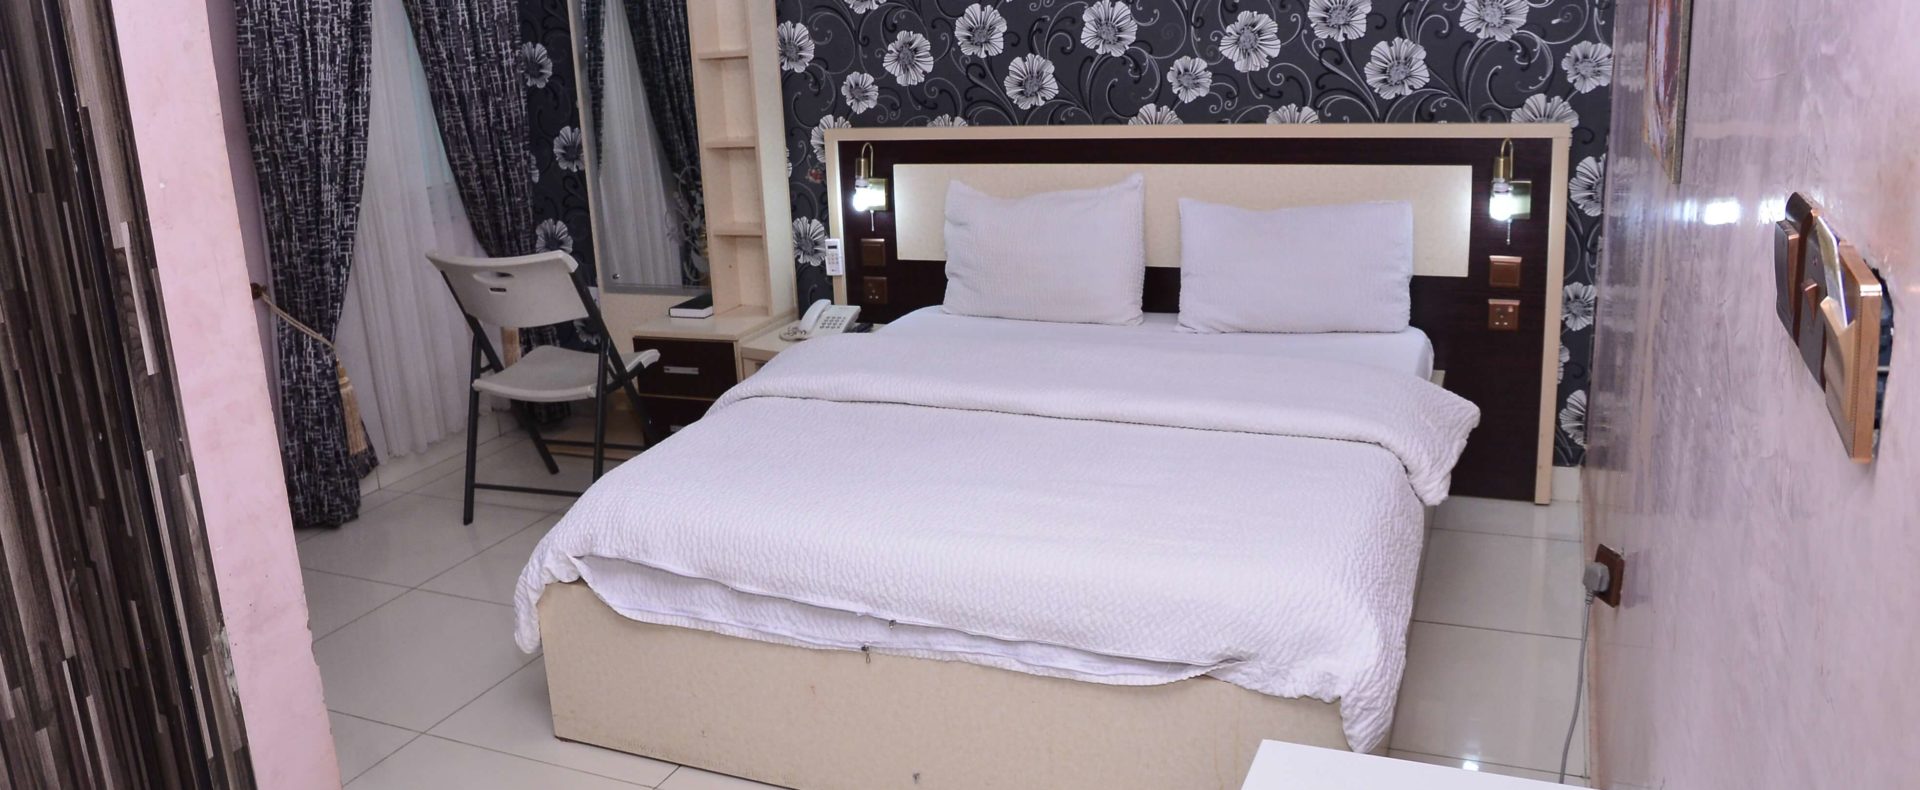 Hotel Mini Suite In Ekiti Nigeria